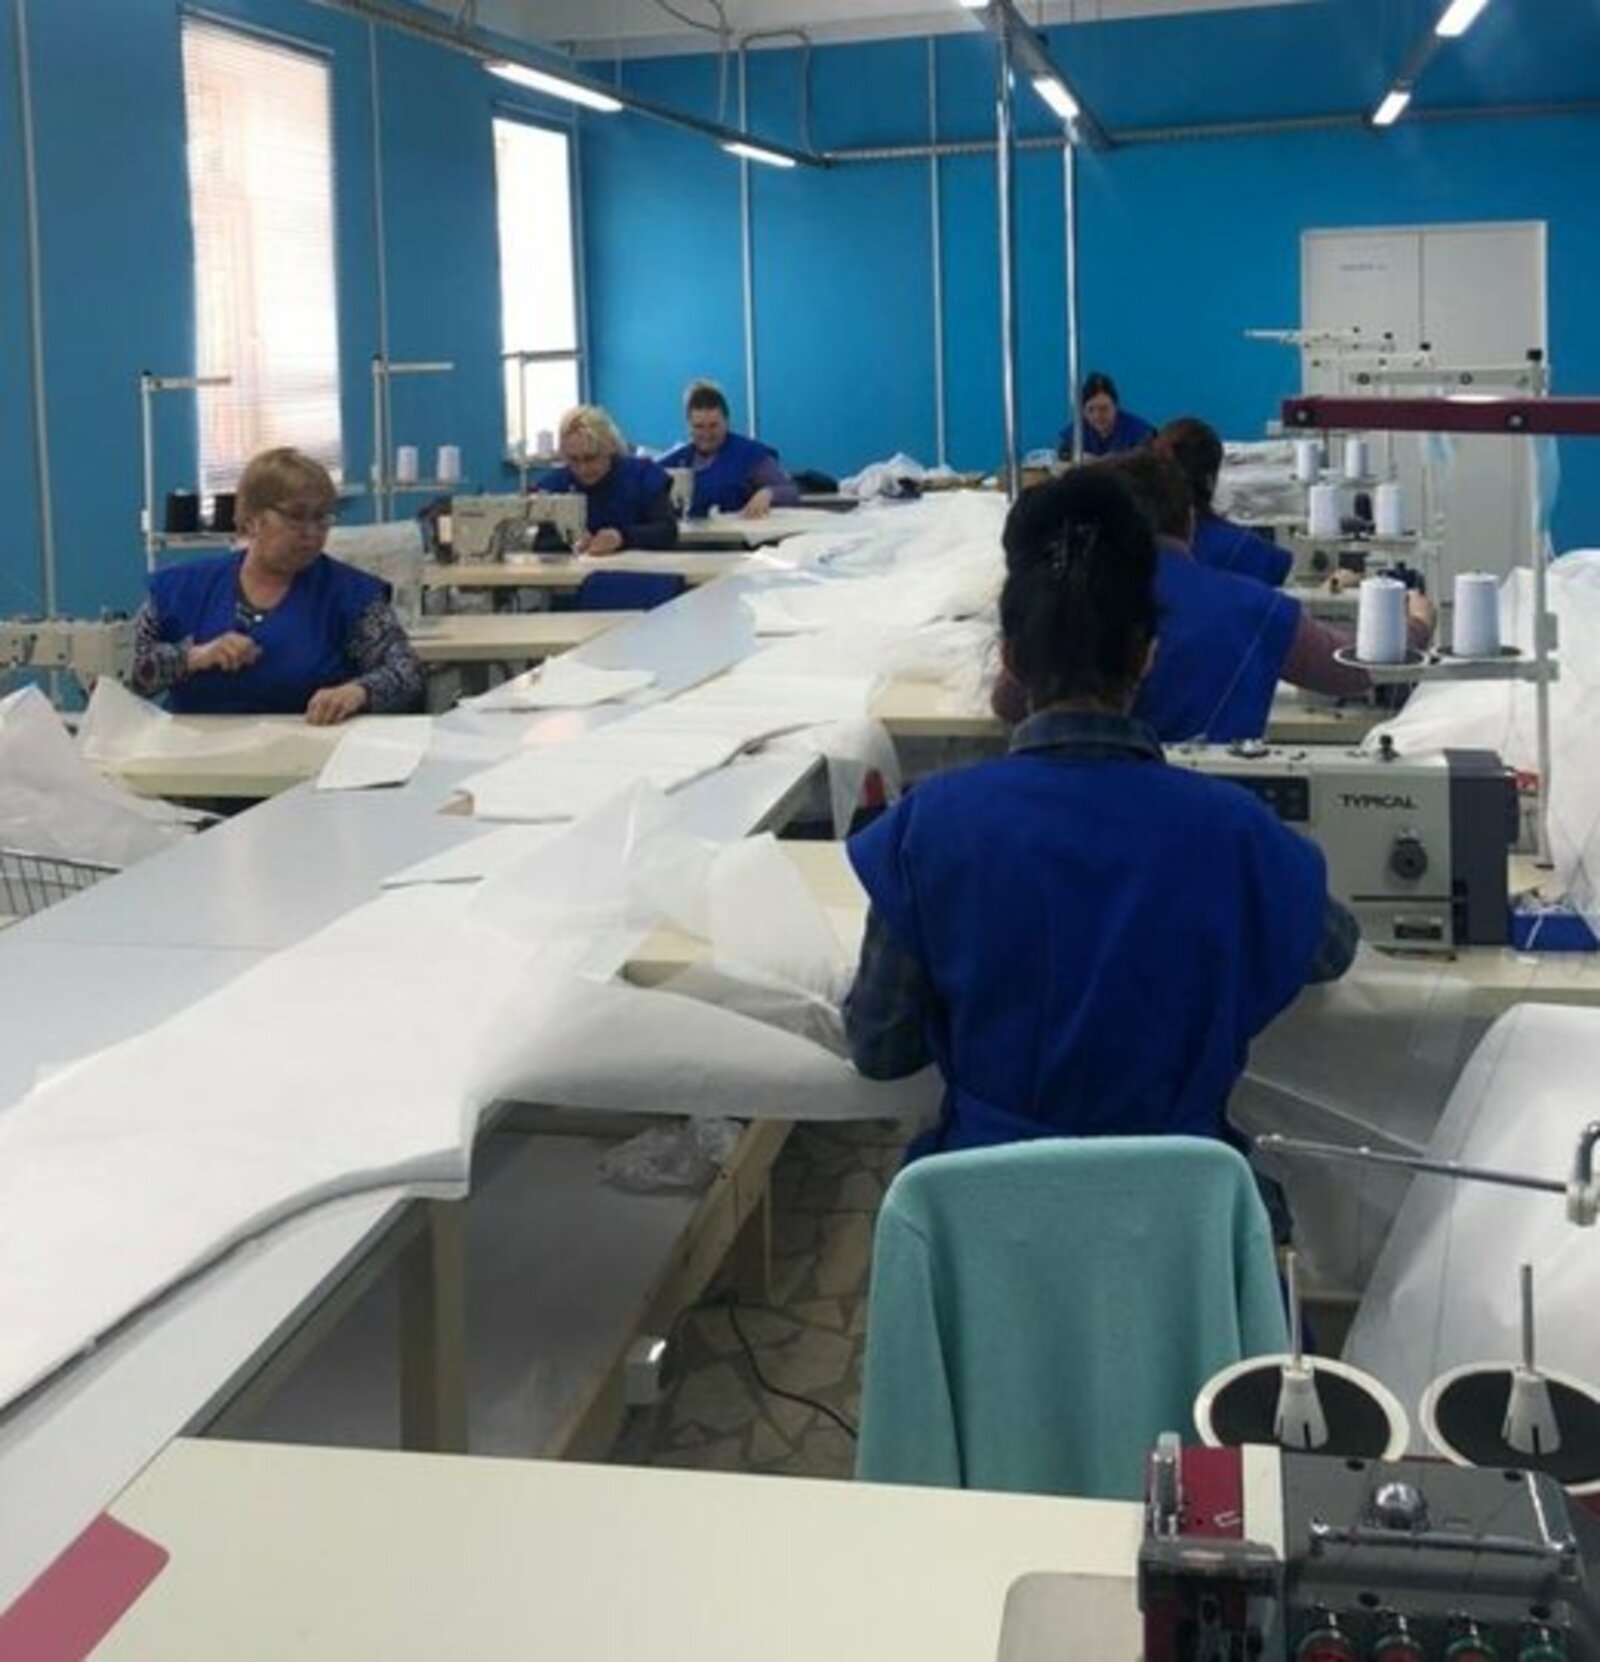 На новой фабрике в Башкирии к работе приступили около 200 обученных бесплатно сотрудников